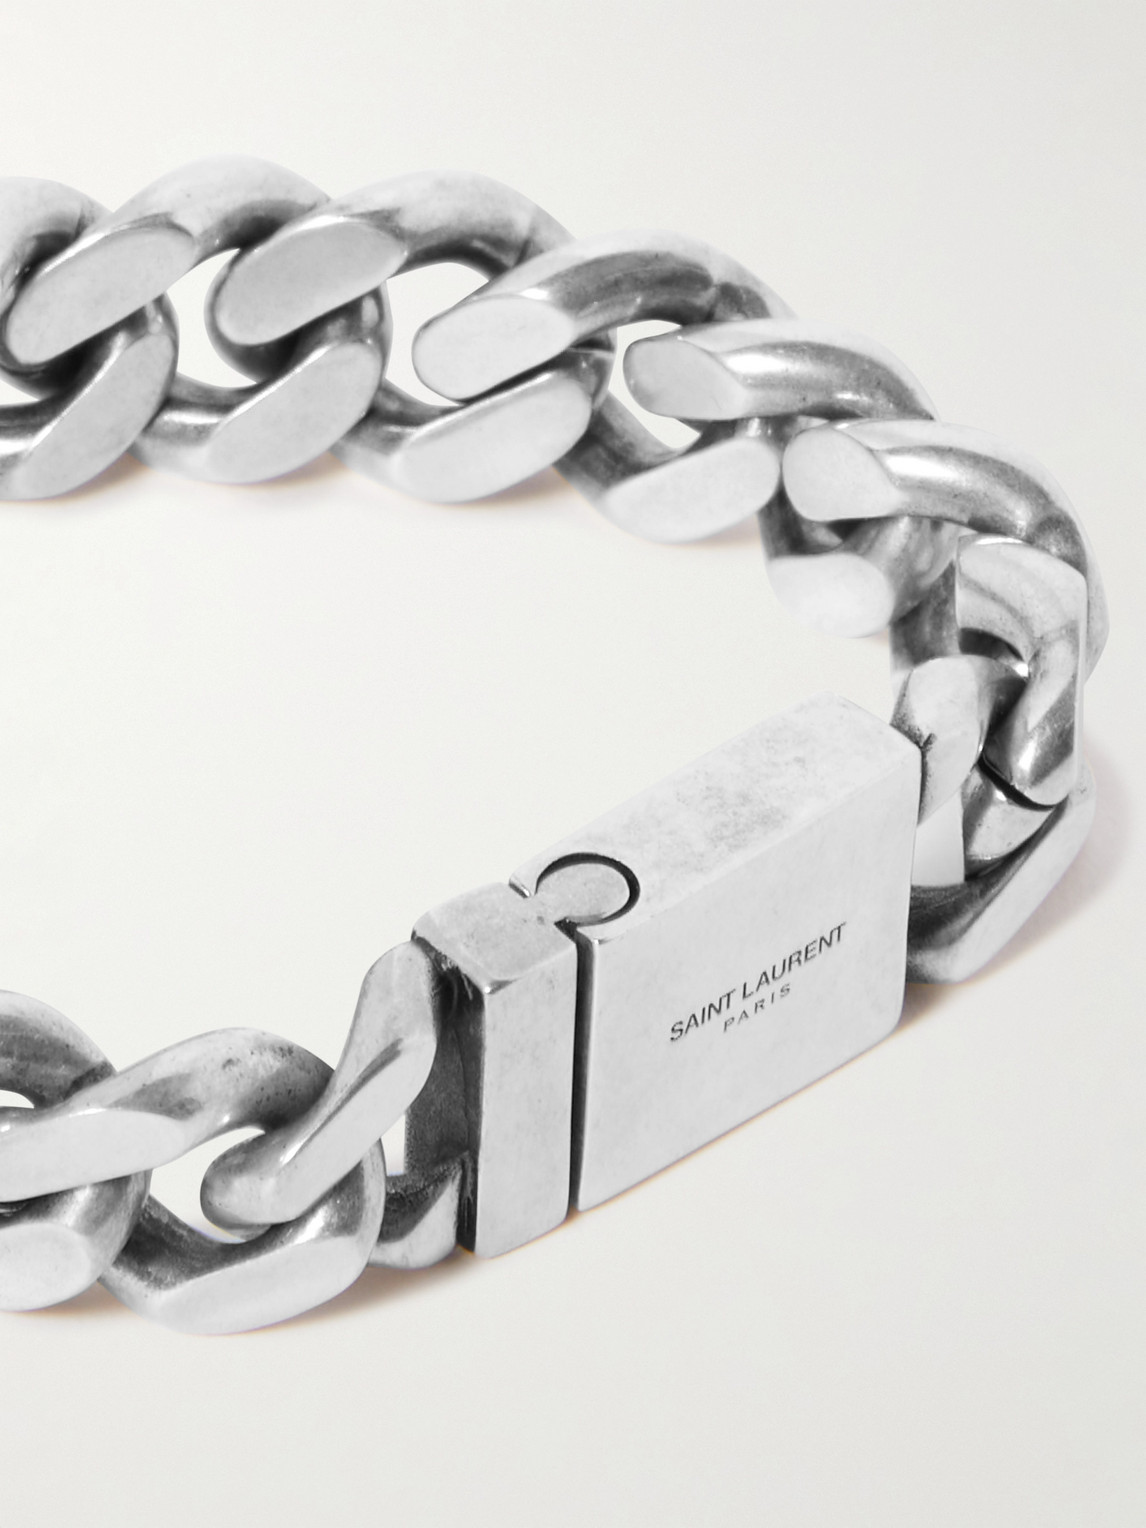 Shop Saint Laurent Silver-tone Chain Bracelet